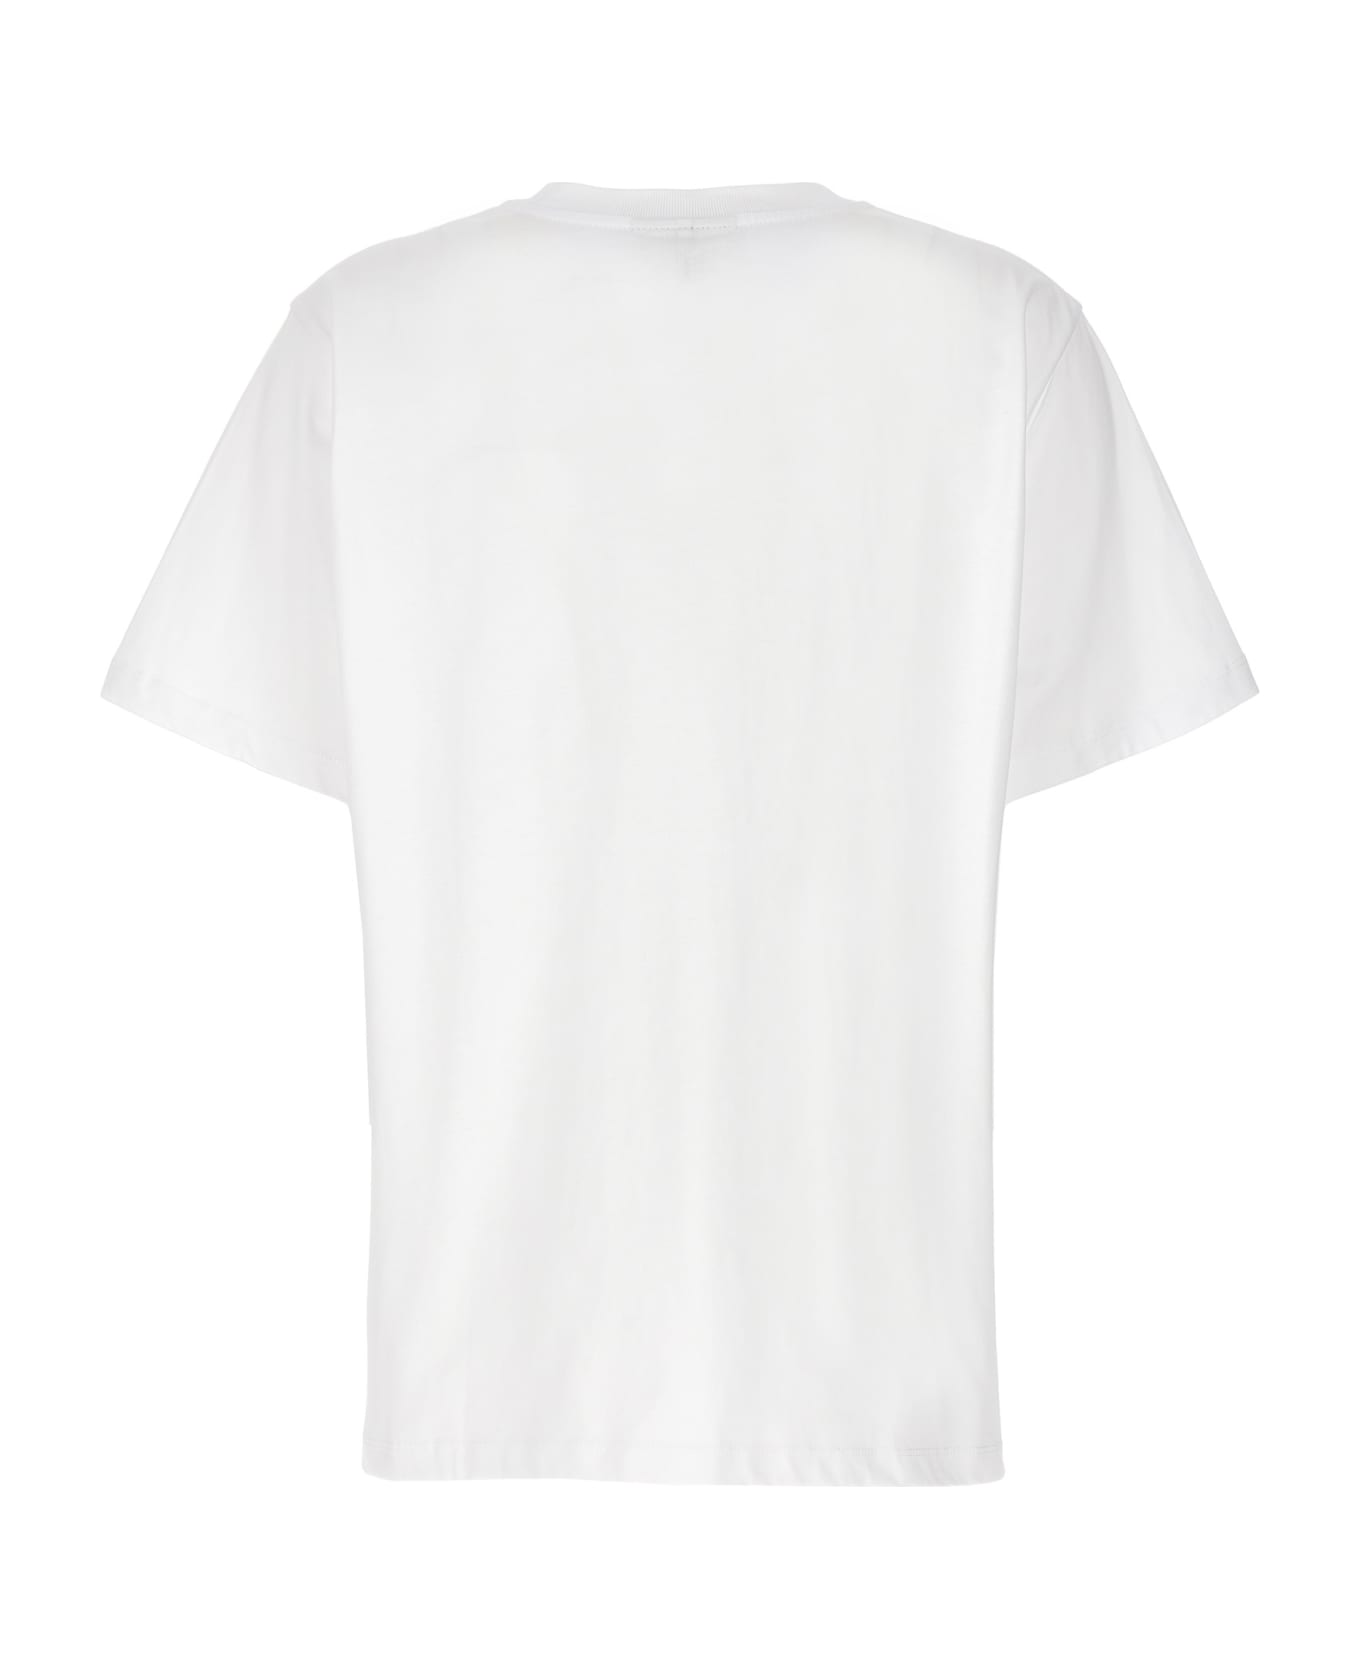 Ganni 'cherry' T-shirt - White